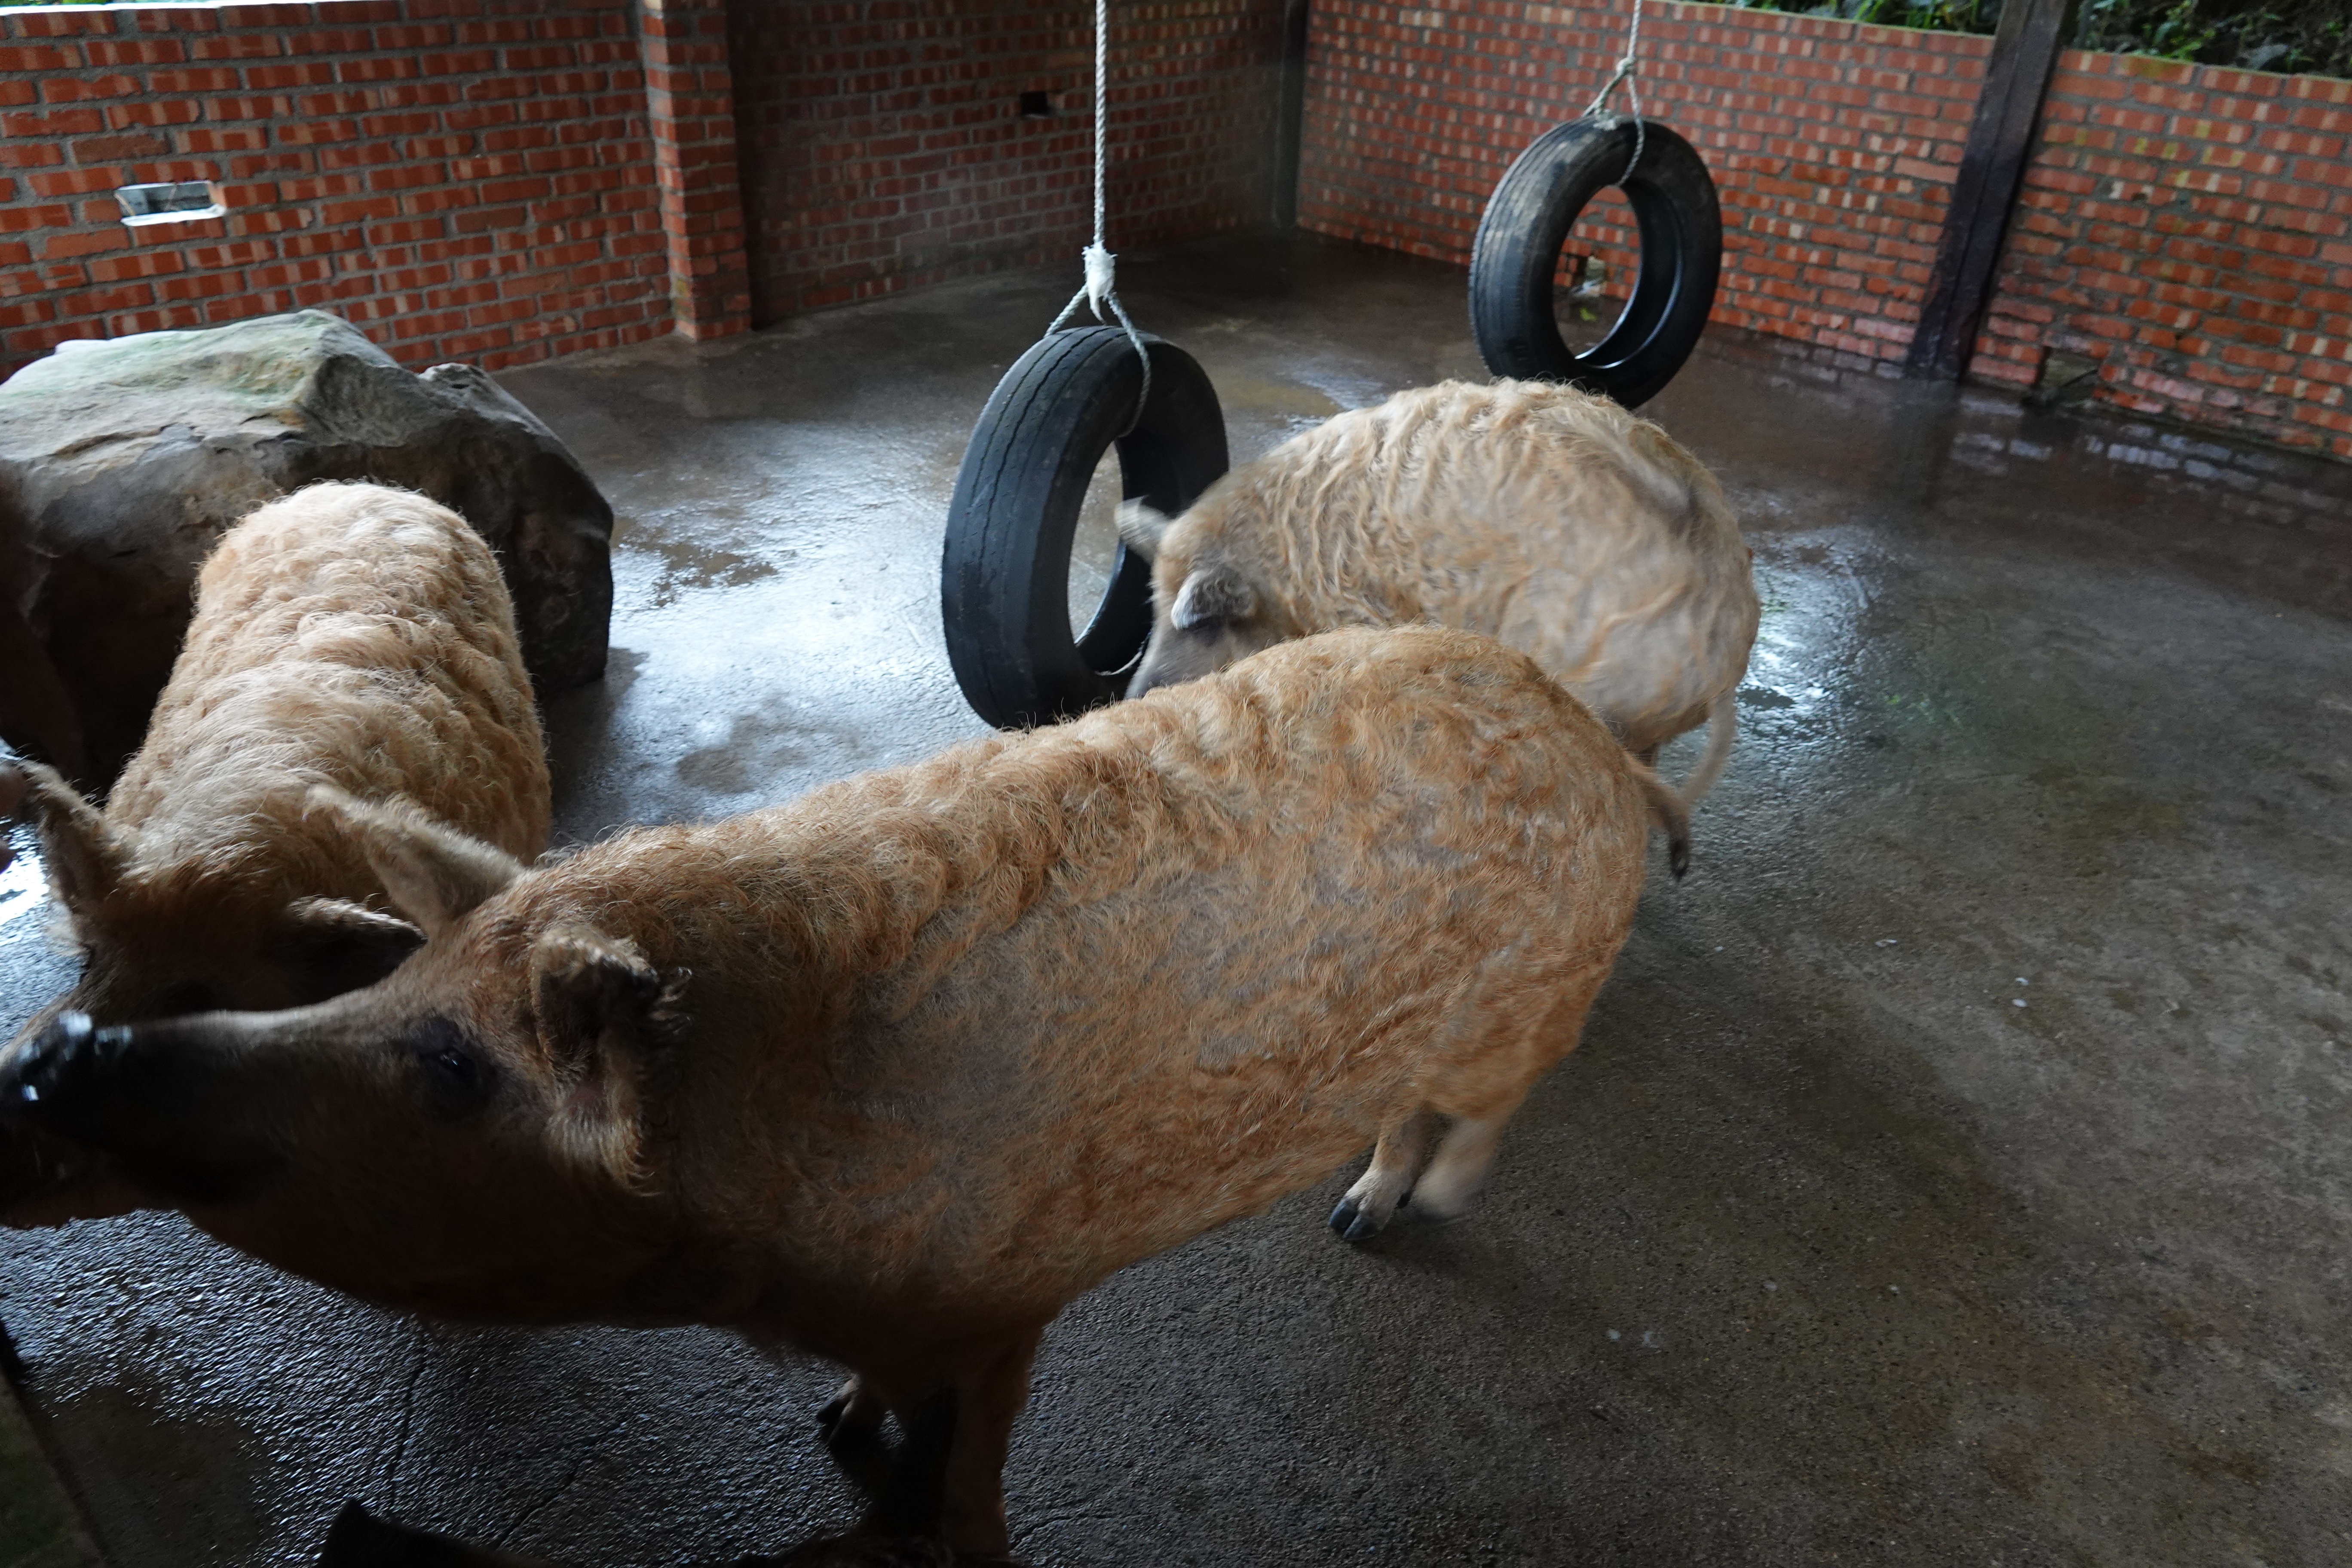 豬隻飼養環境擺設石塊和輪胎以提高環境豐富度